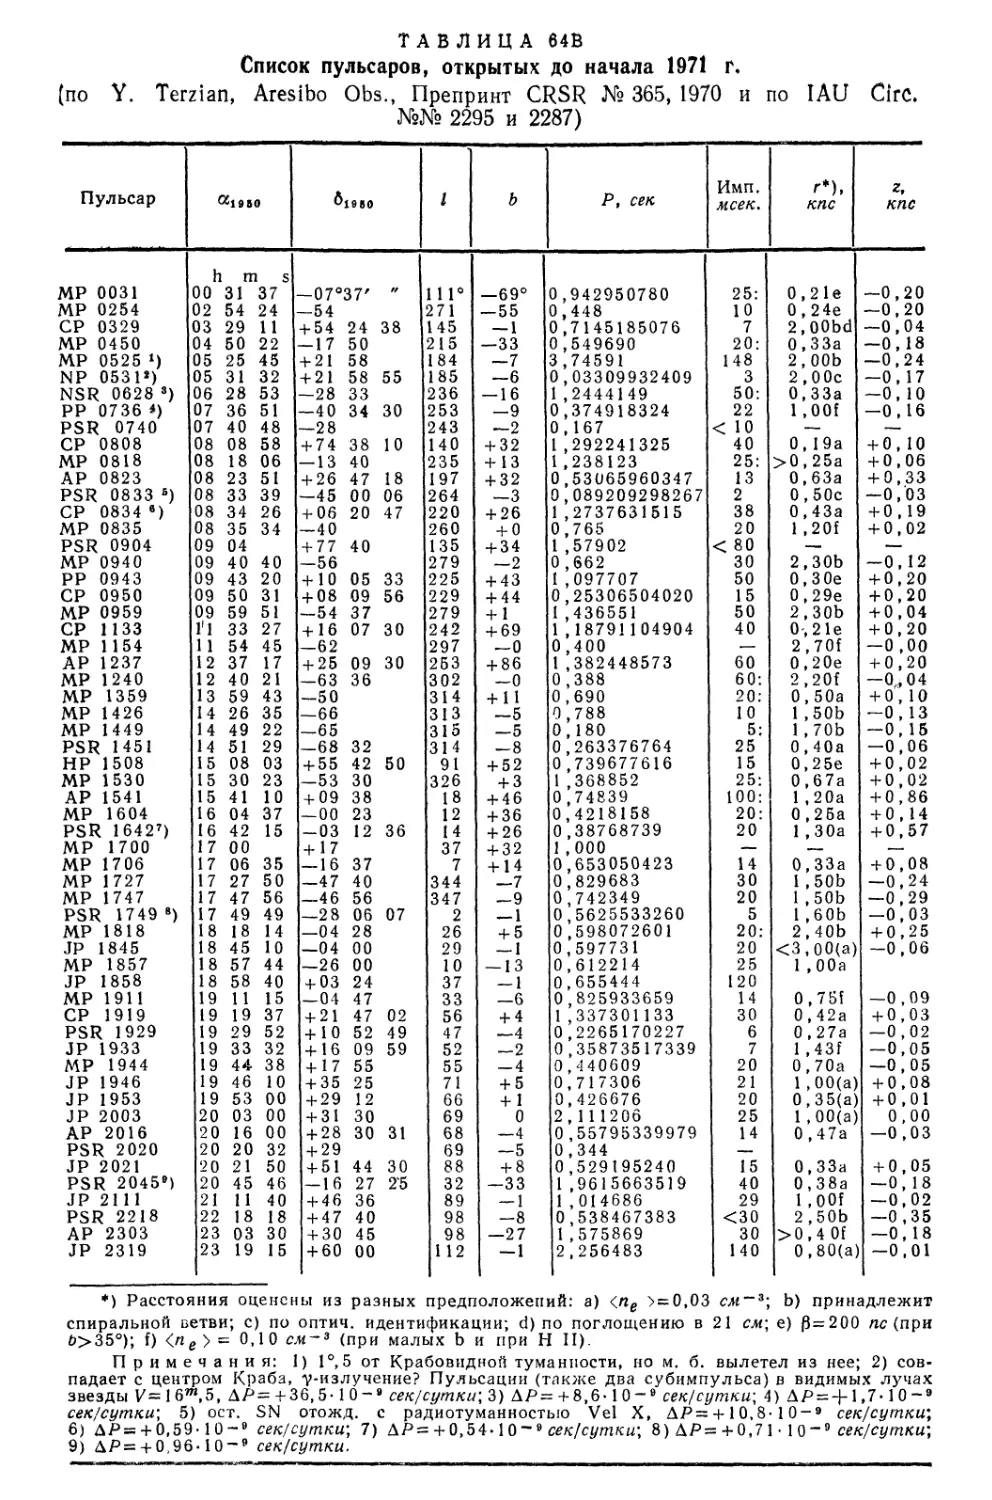 64В.Список пульсаров, открытых до 1971 г